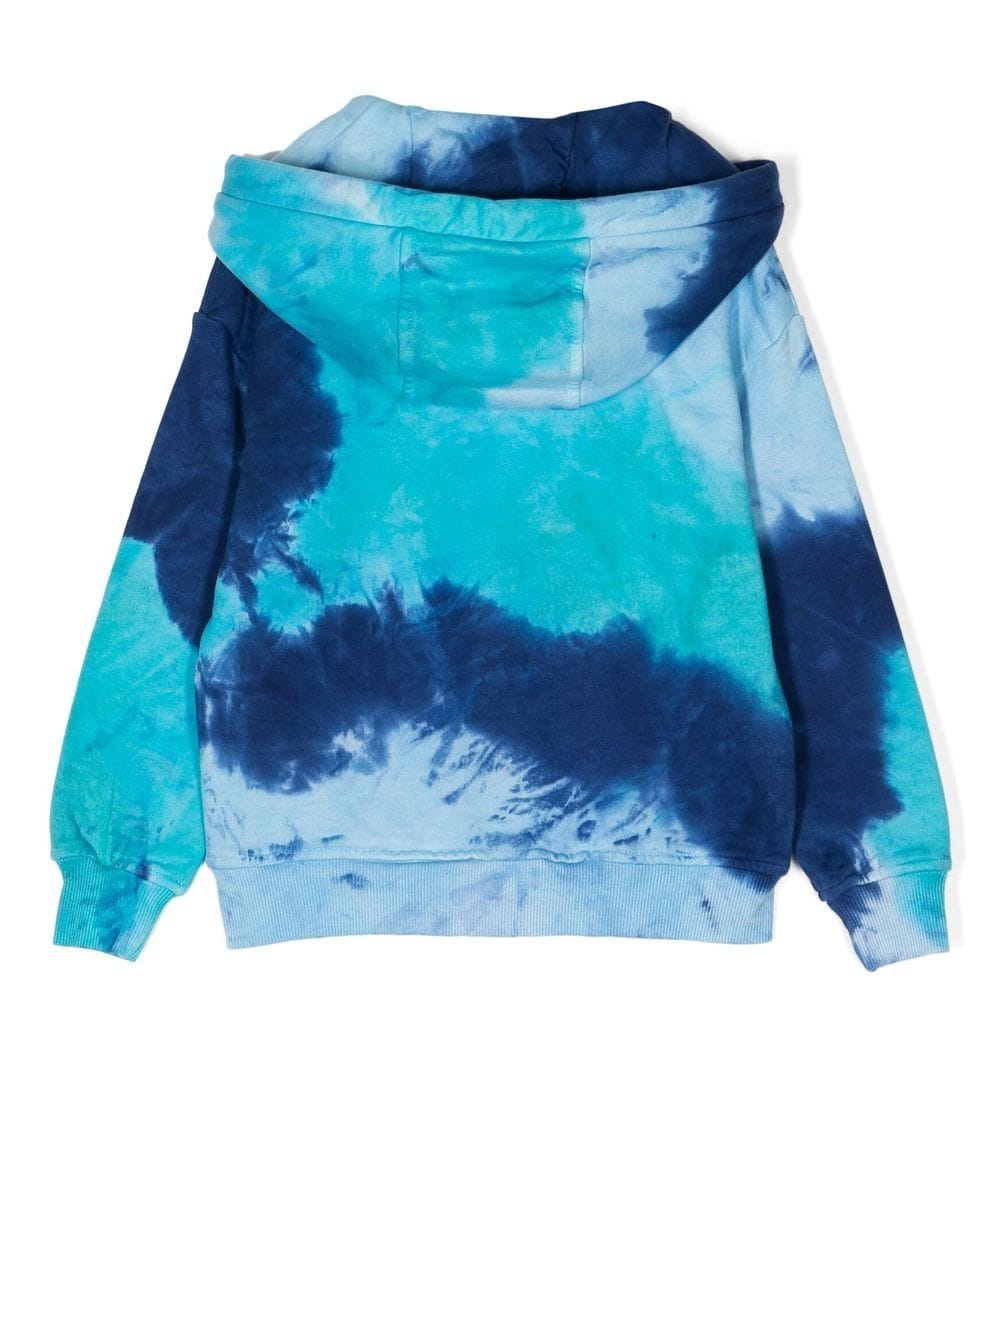 Mauna Kea tie-dye hoodie